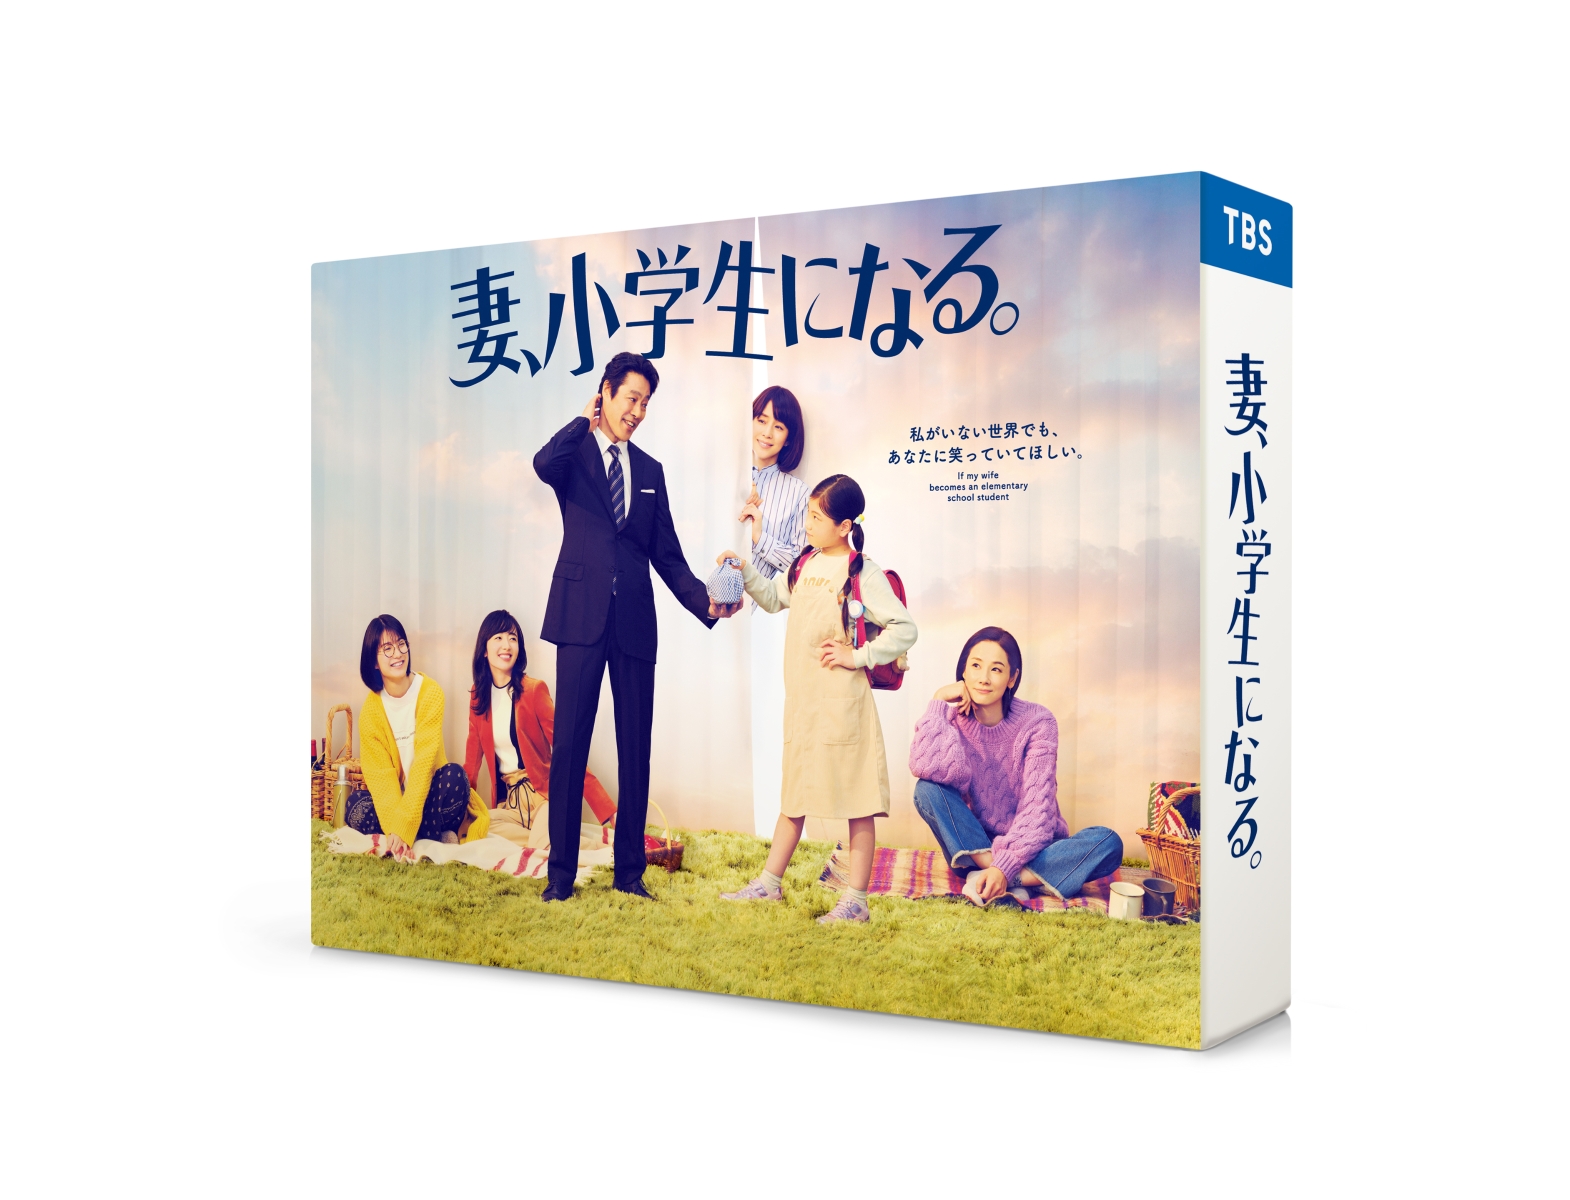 楽天ブックス: 「ミステリと言う勿れ」Blu-ray BOX【Blu-ray】 - 菅田